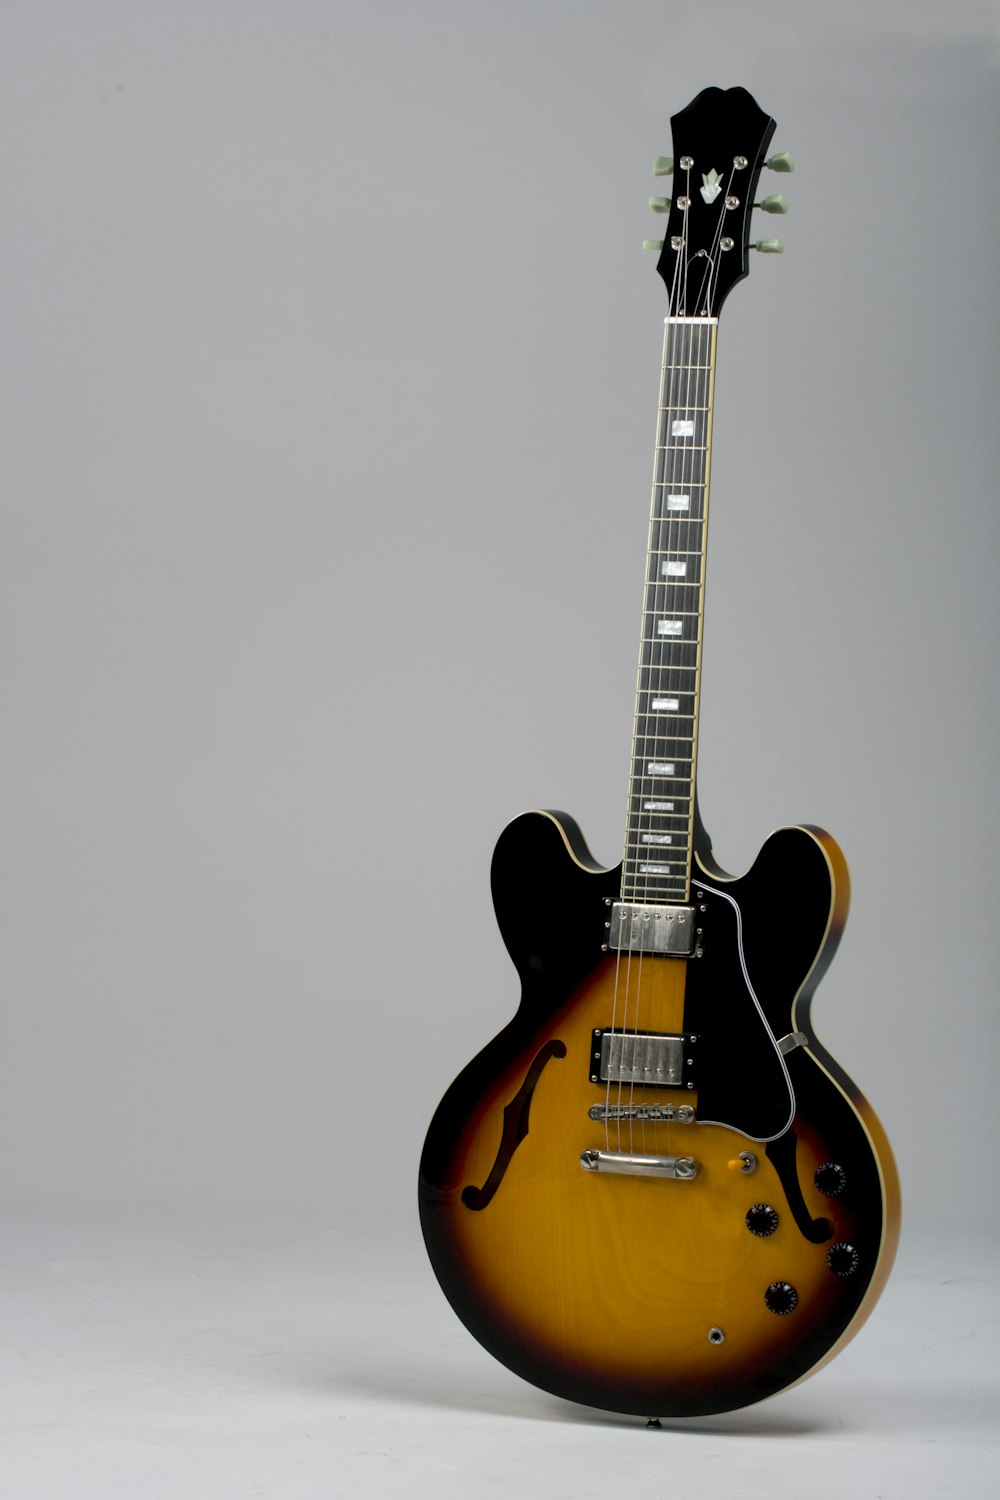 Guitarra eléctrica Stratocaster marrón y negra